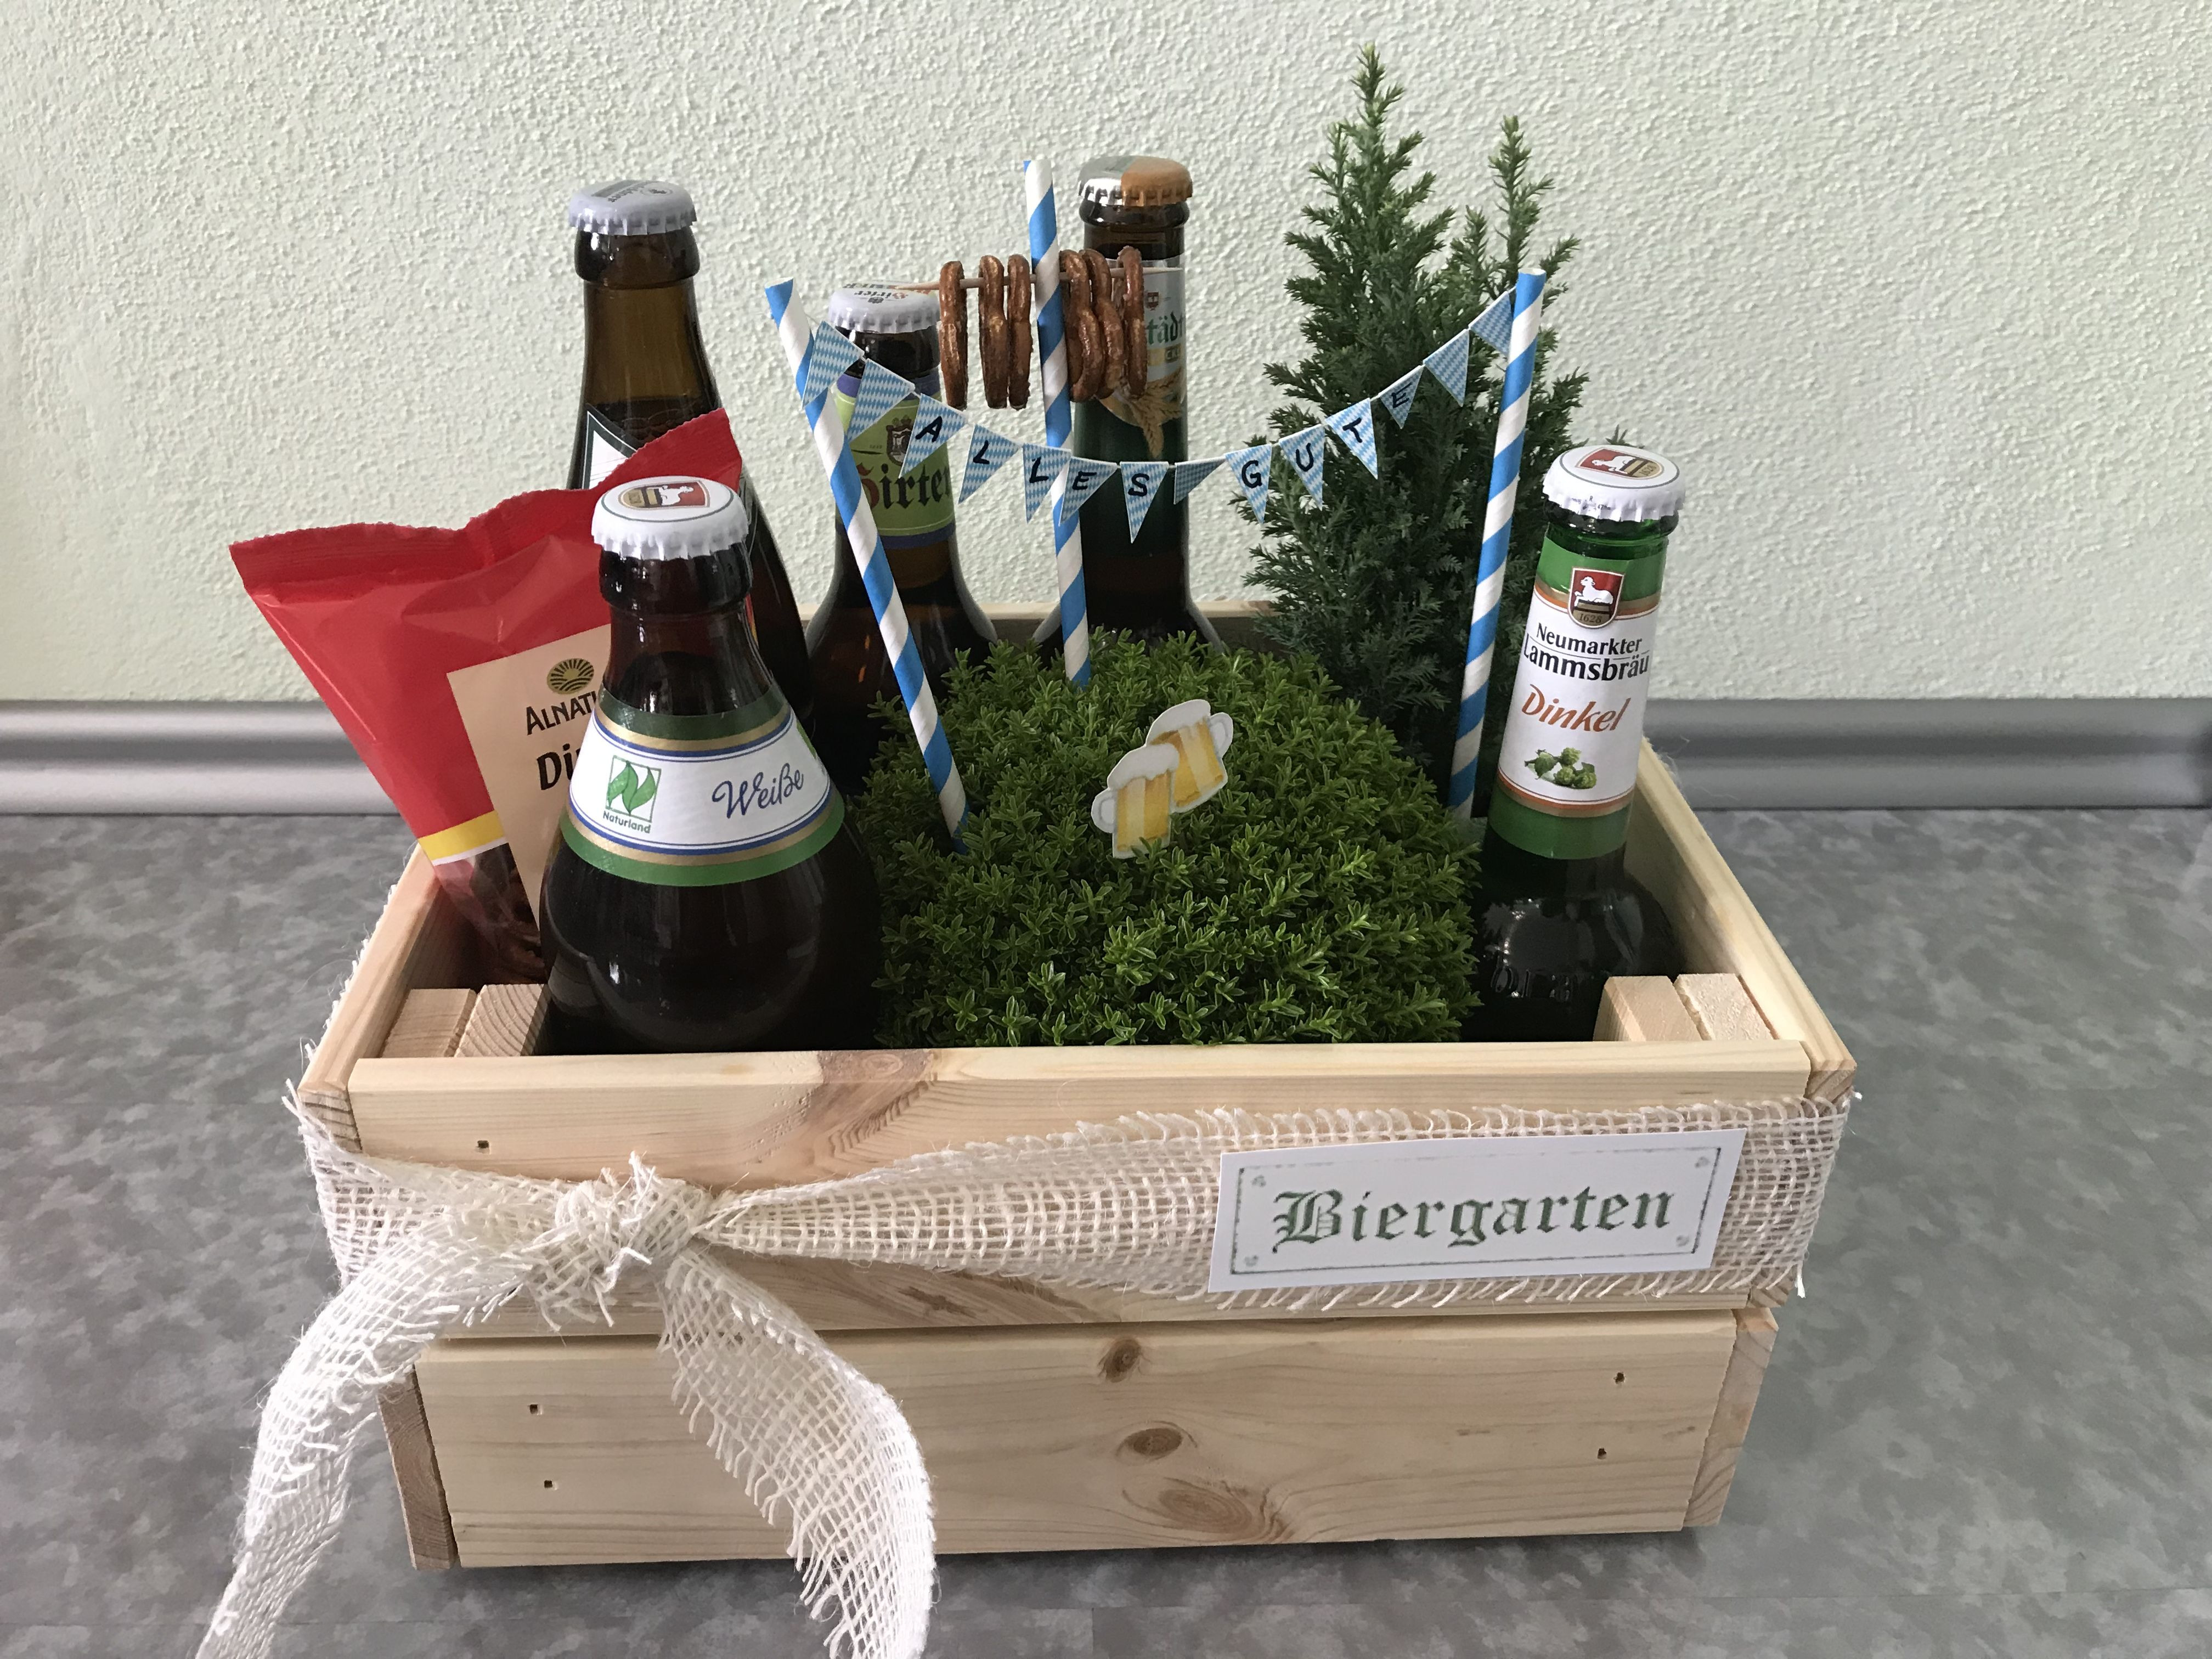 Geburtstagsgeschenk Für Männer
 Biergarten Geburtstagsgeschenk für Männer present for men